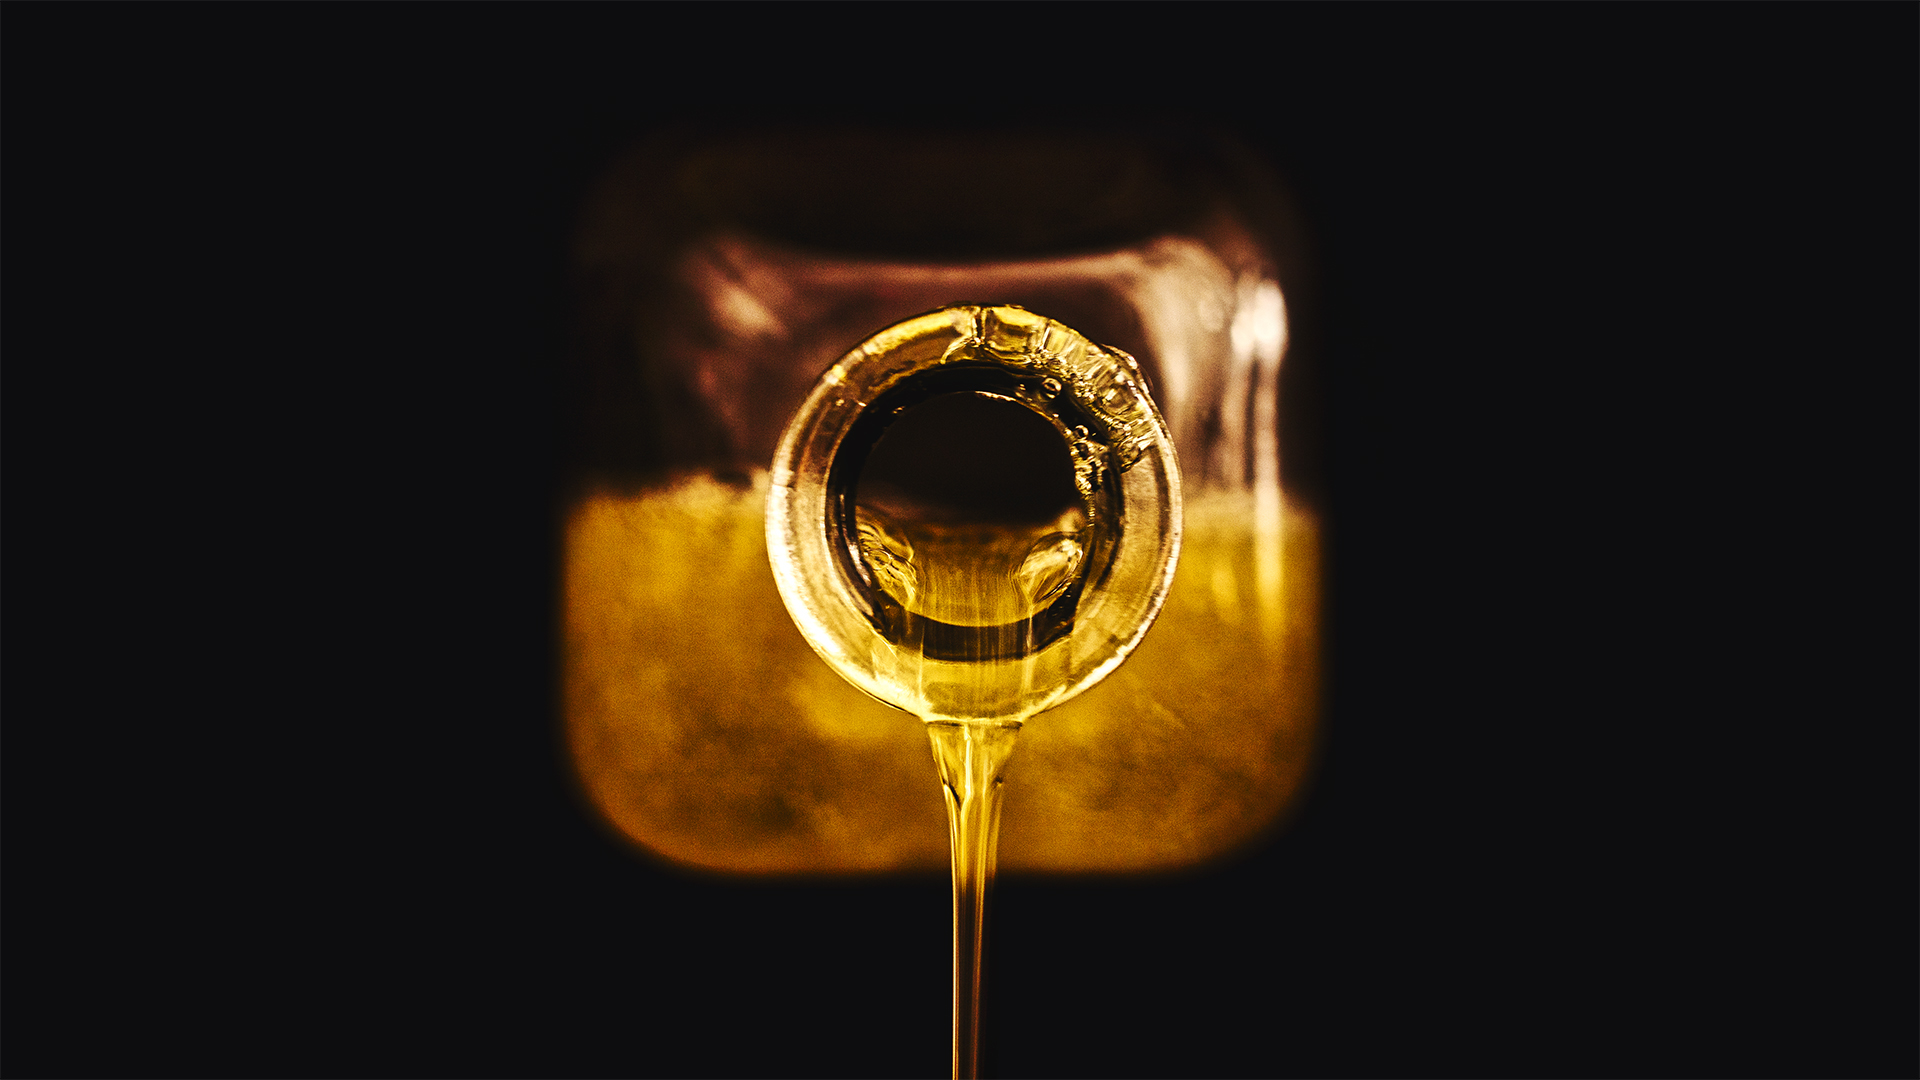 Golden fluid